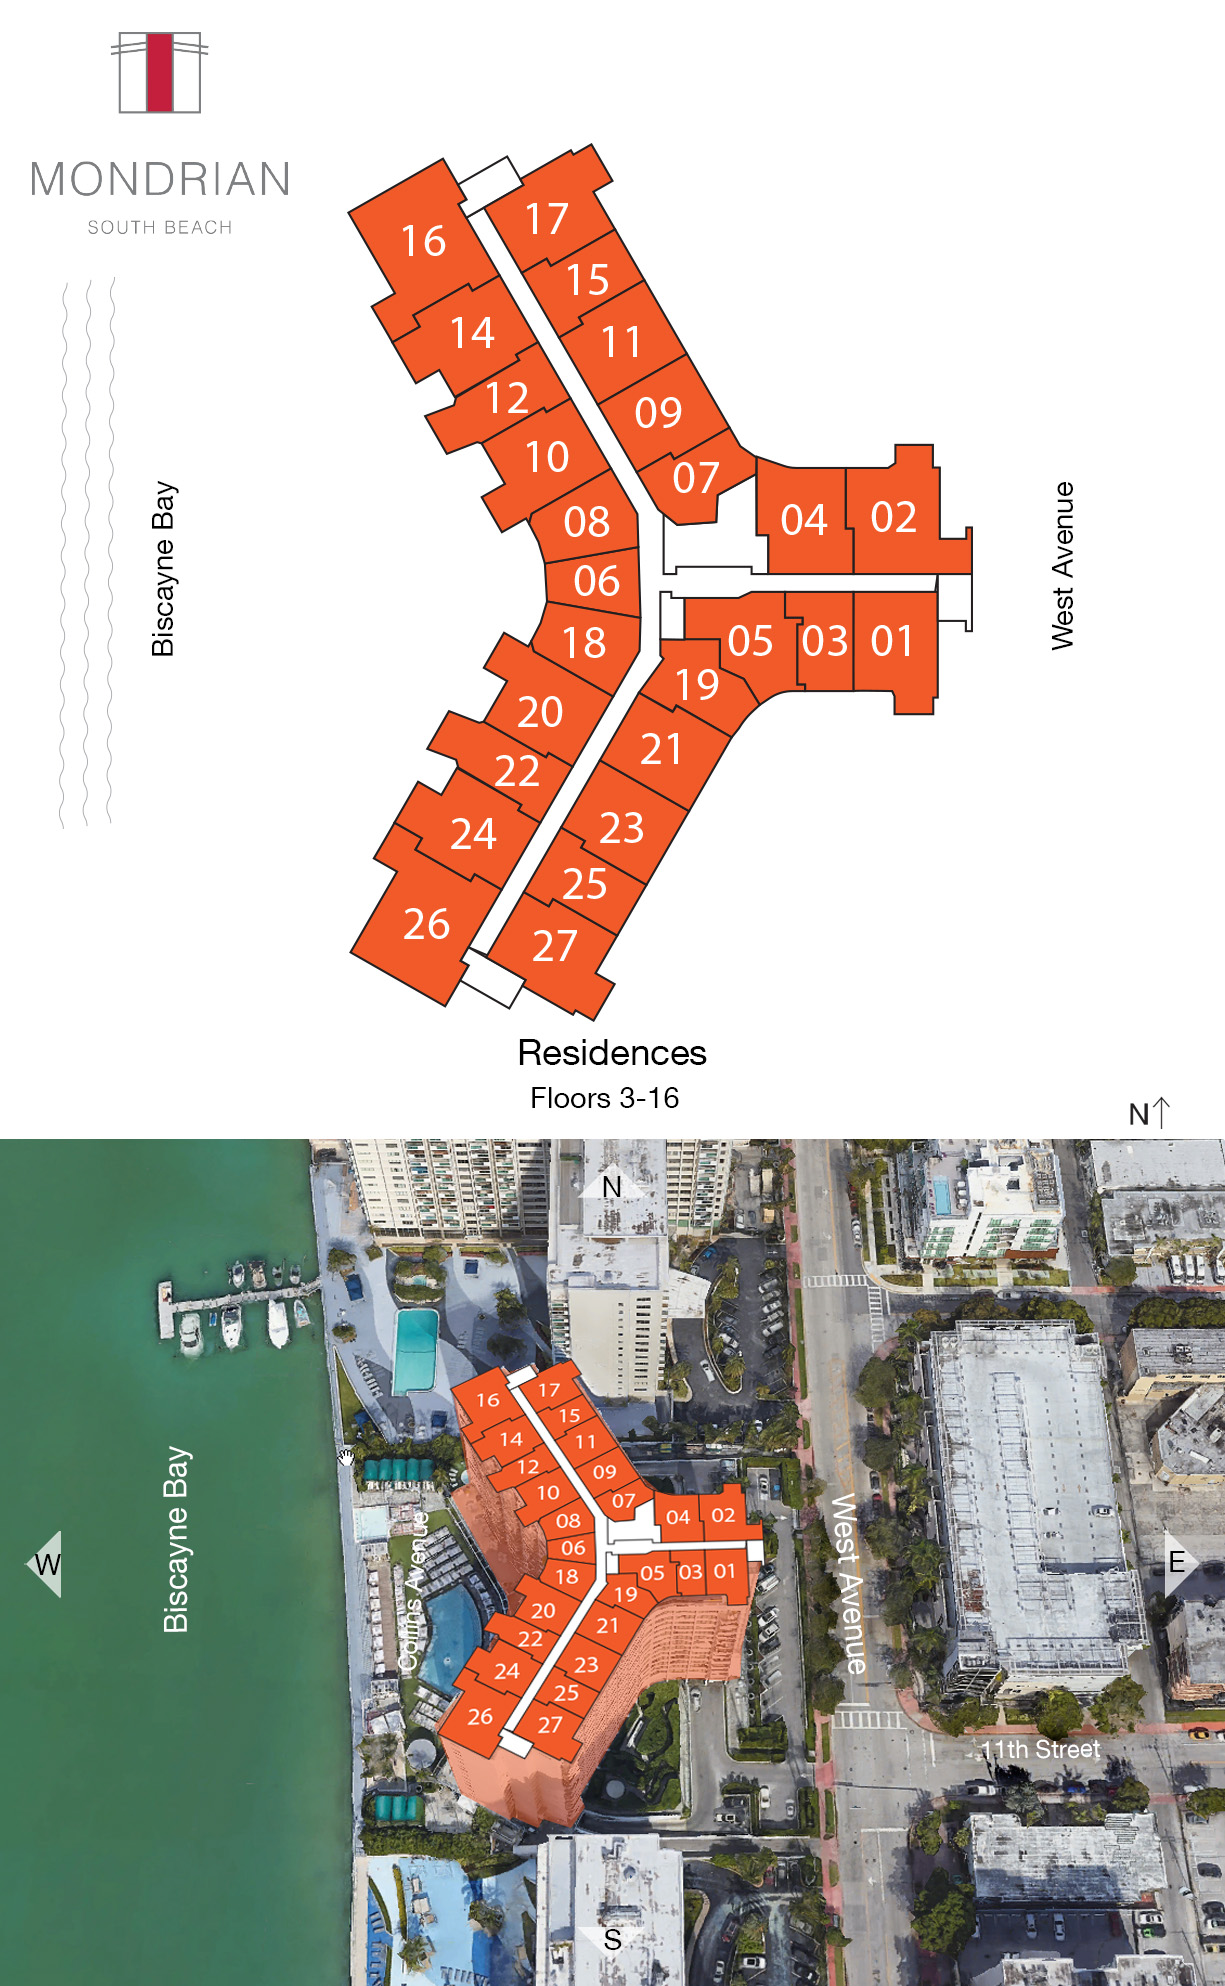 Mondrian South Beach Key Plan